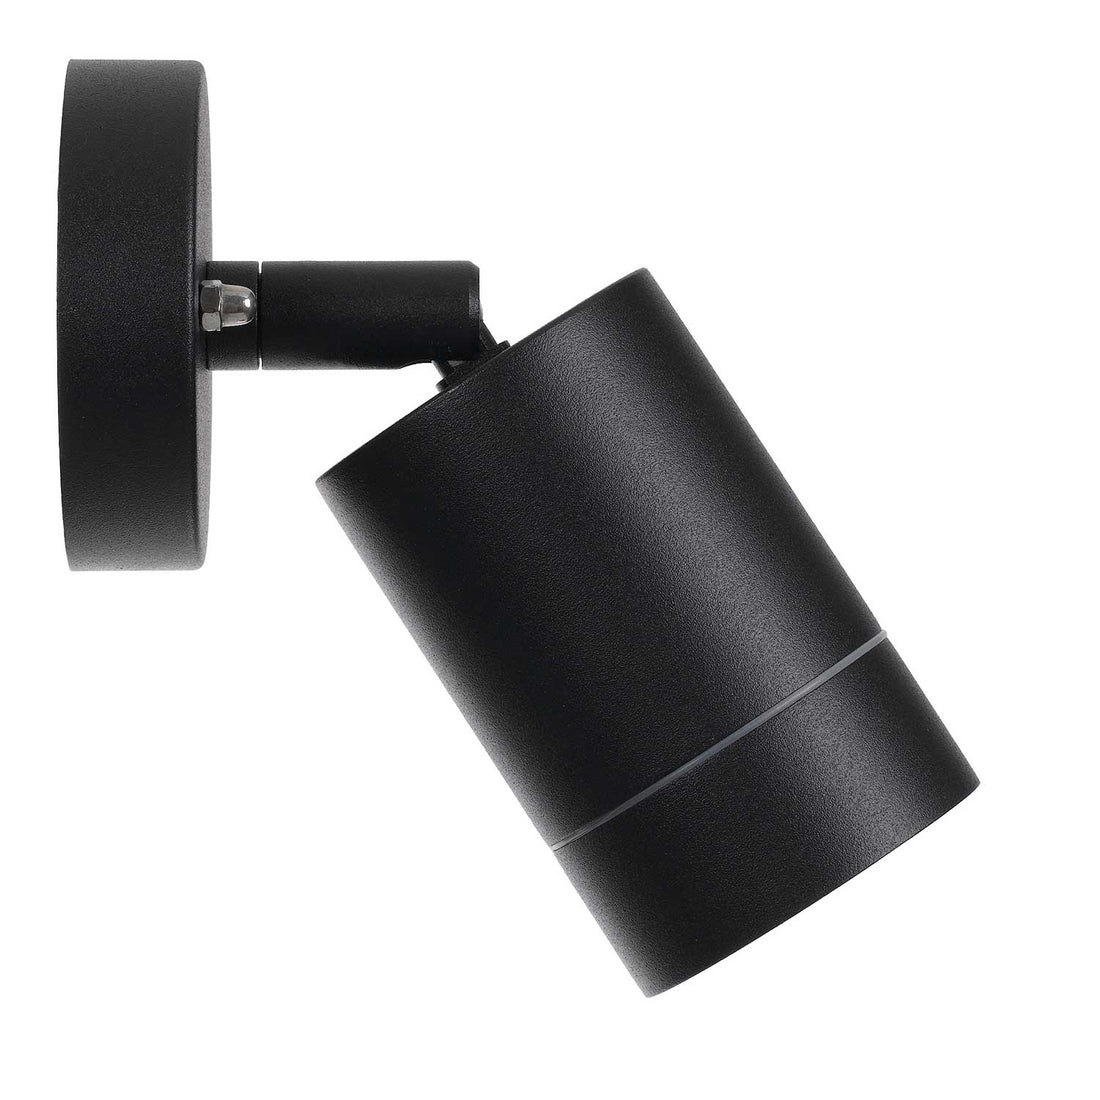 Peak Single Black Adjustable Cylinder Exterior Wall Light